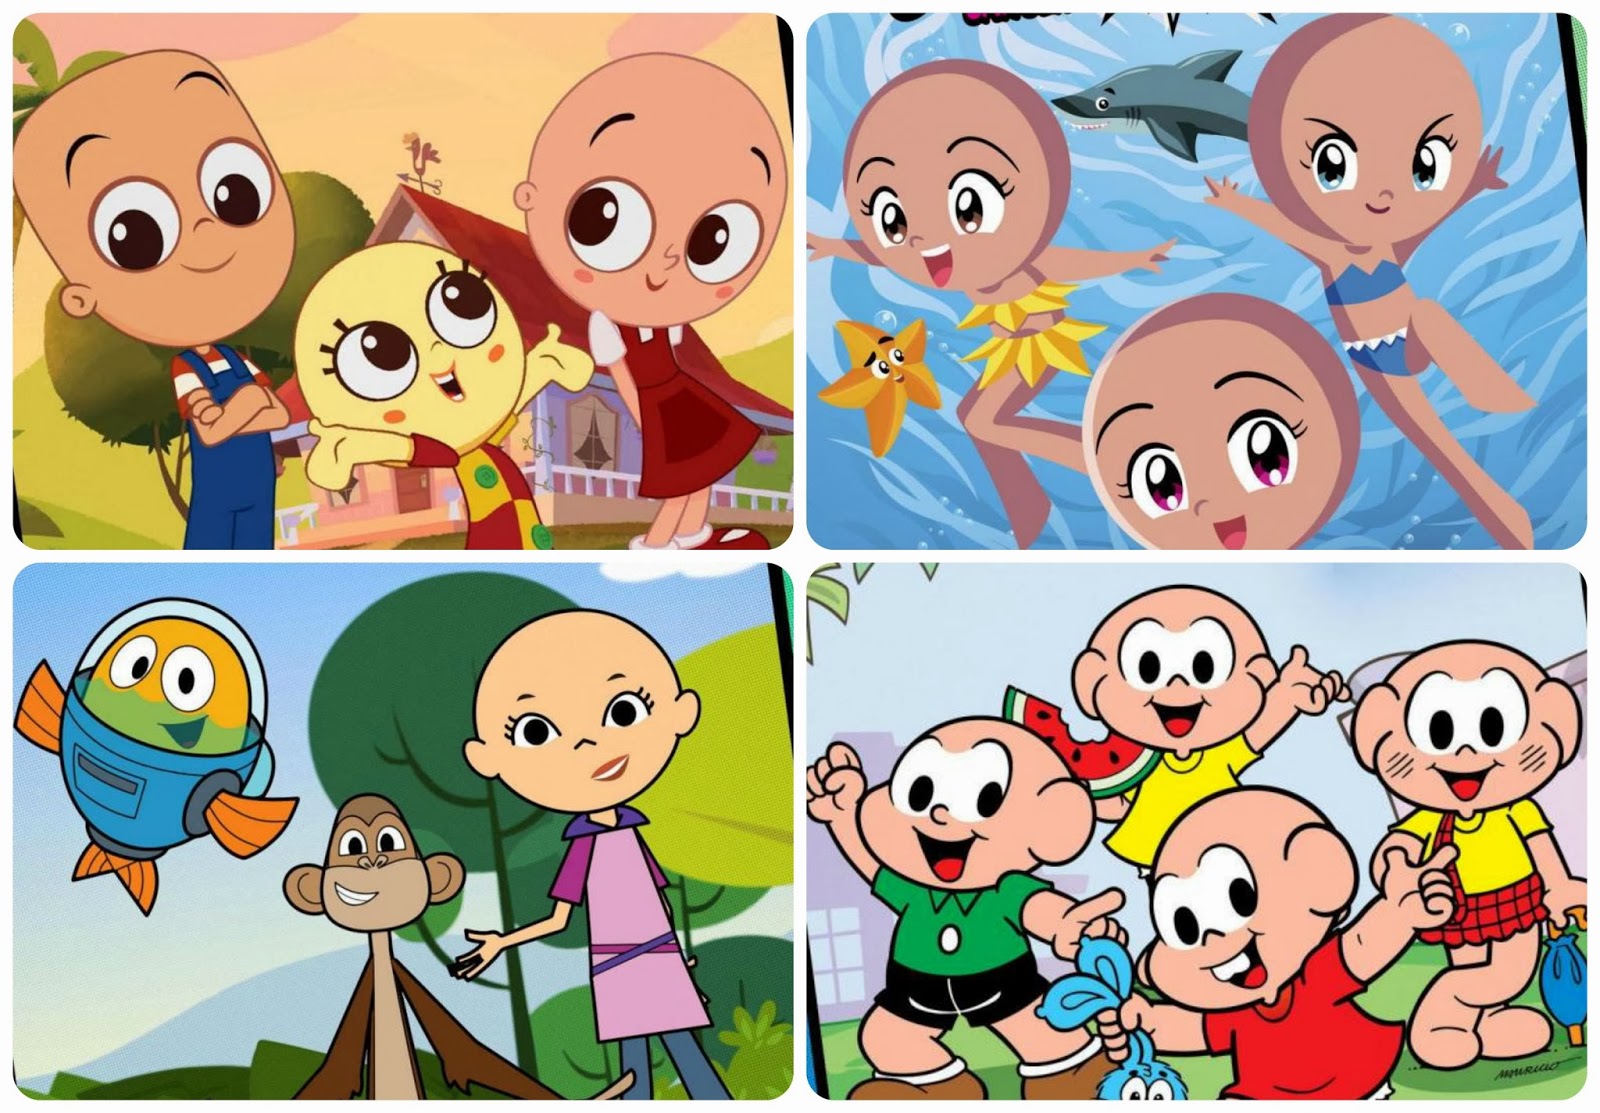 Desenhos animados ficam carecas para promover conscientização do câncer  infantil - Shutterstock Blog Português